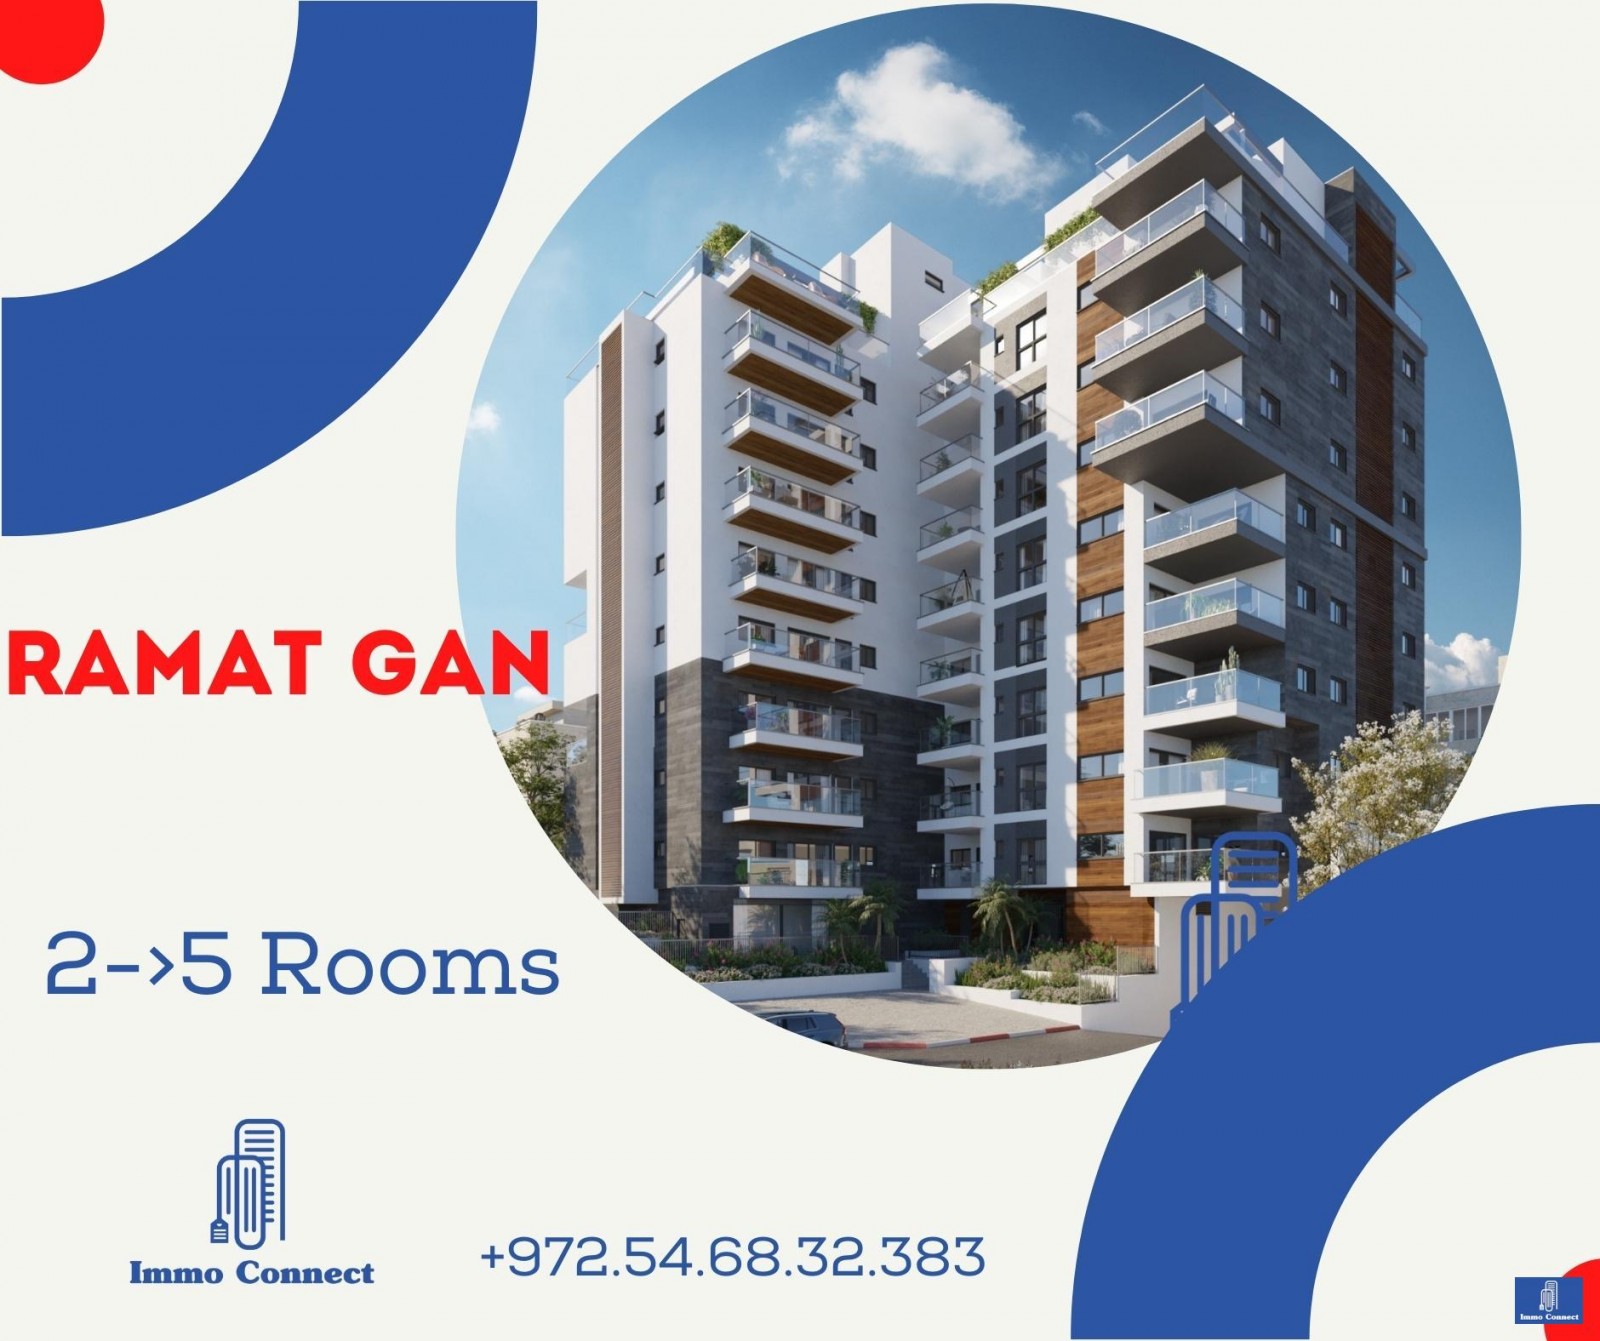 Mini-Penthouse 4 Rooms Ramat Gan Ramat gan 440-IBL-354